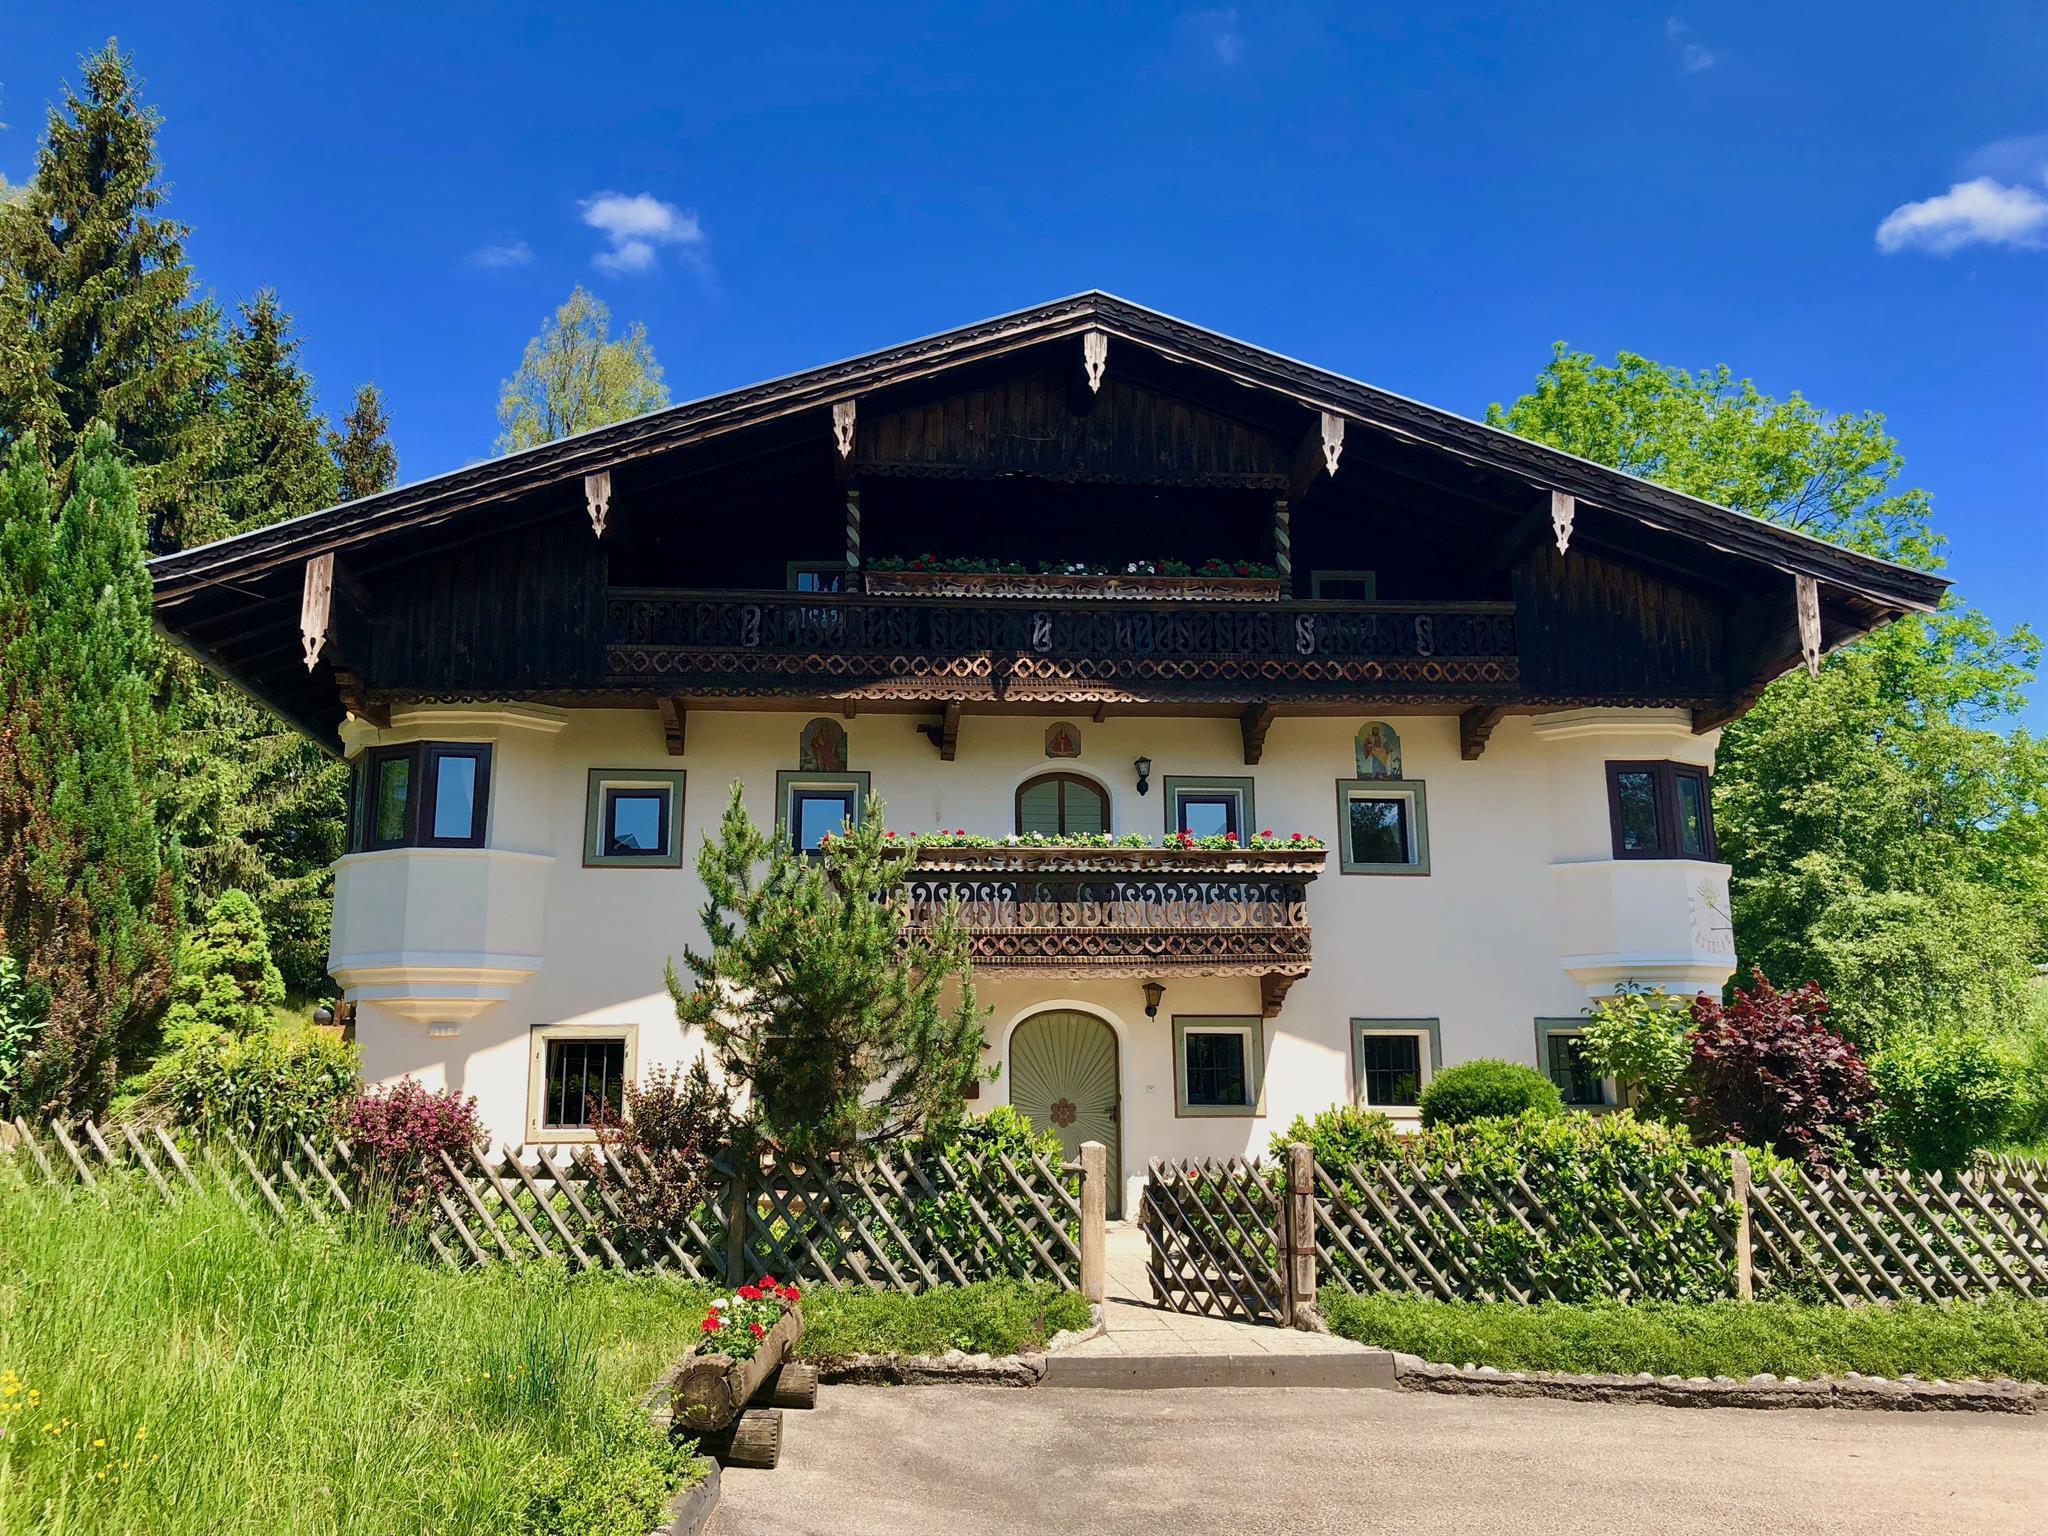 Bauernhaus-Schloss Wagrain Ferienhaus, Toilette un Ferienhaus in Österreich